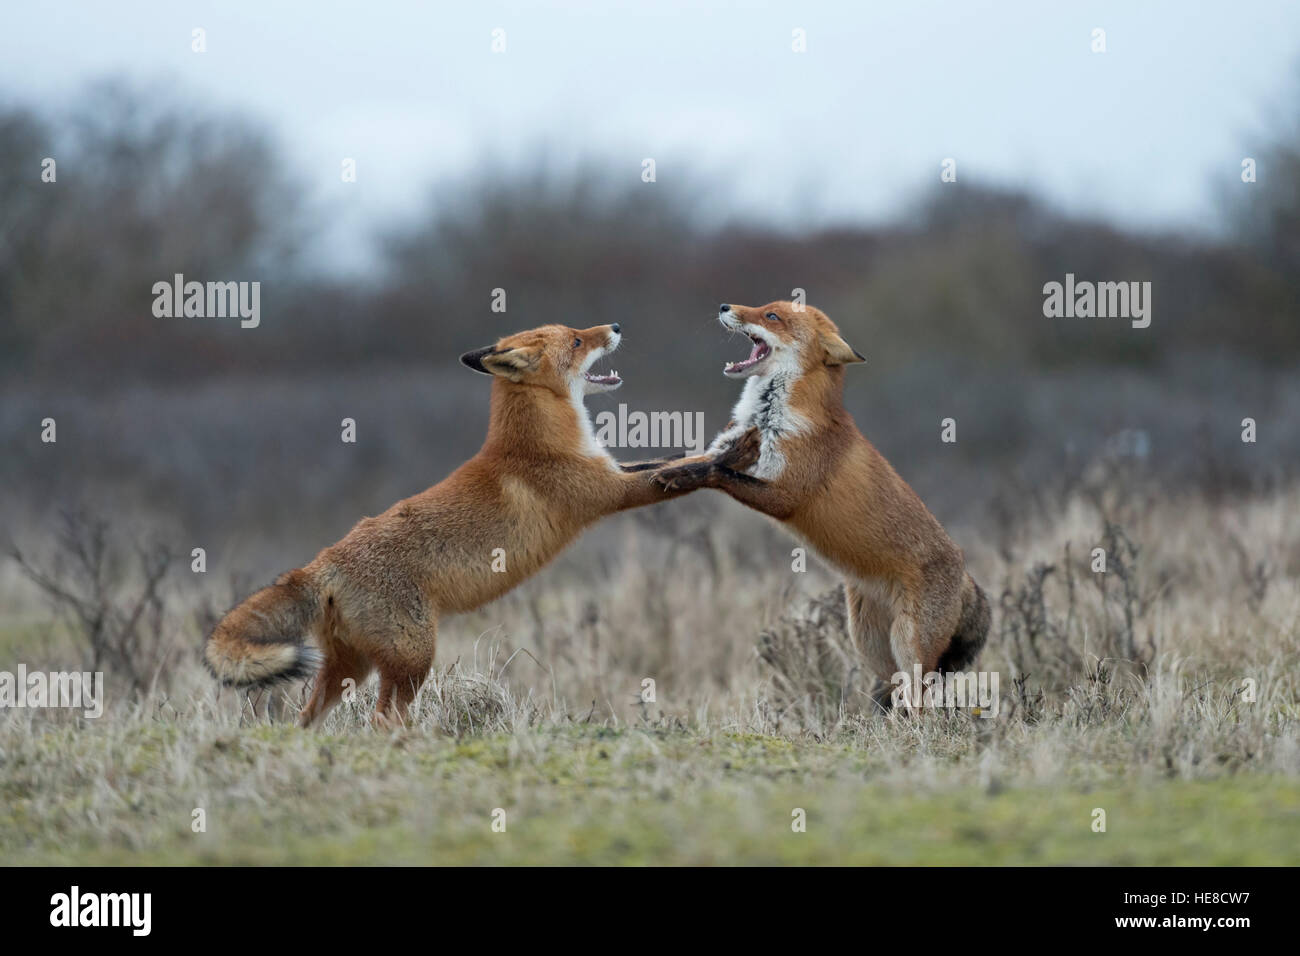 Rotfüchse (Vulpes Vulpes) in Kampf, Kampf, auf den Hinterbeinen stehend, mit weit geöffneten Rachen, während der Brunftzeit drohen. Stockfoto